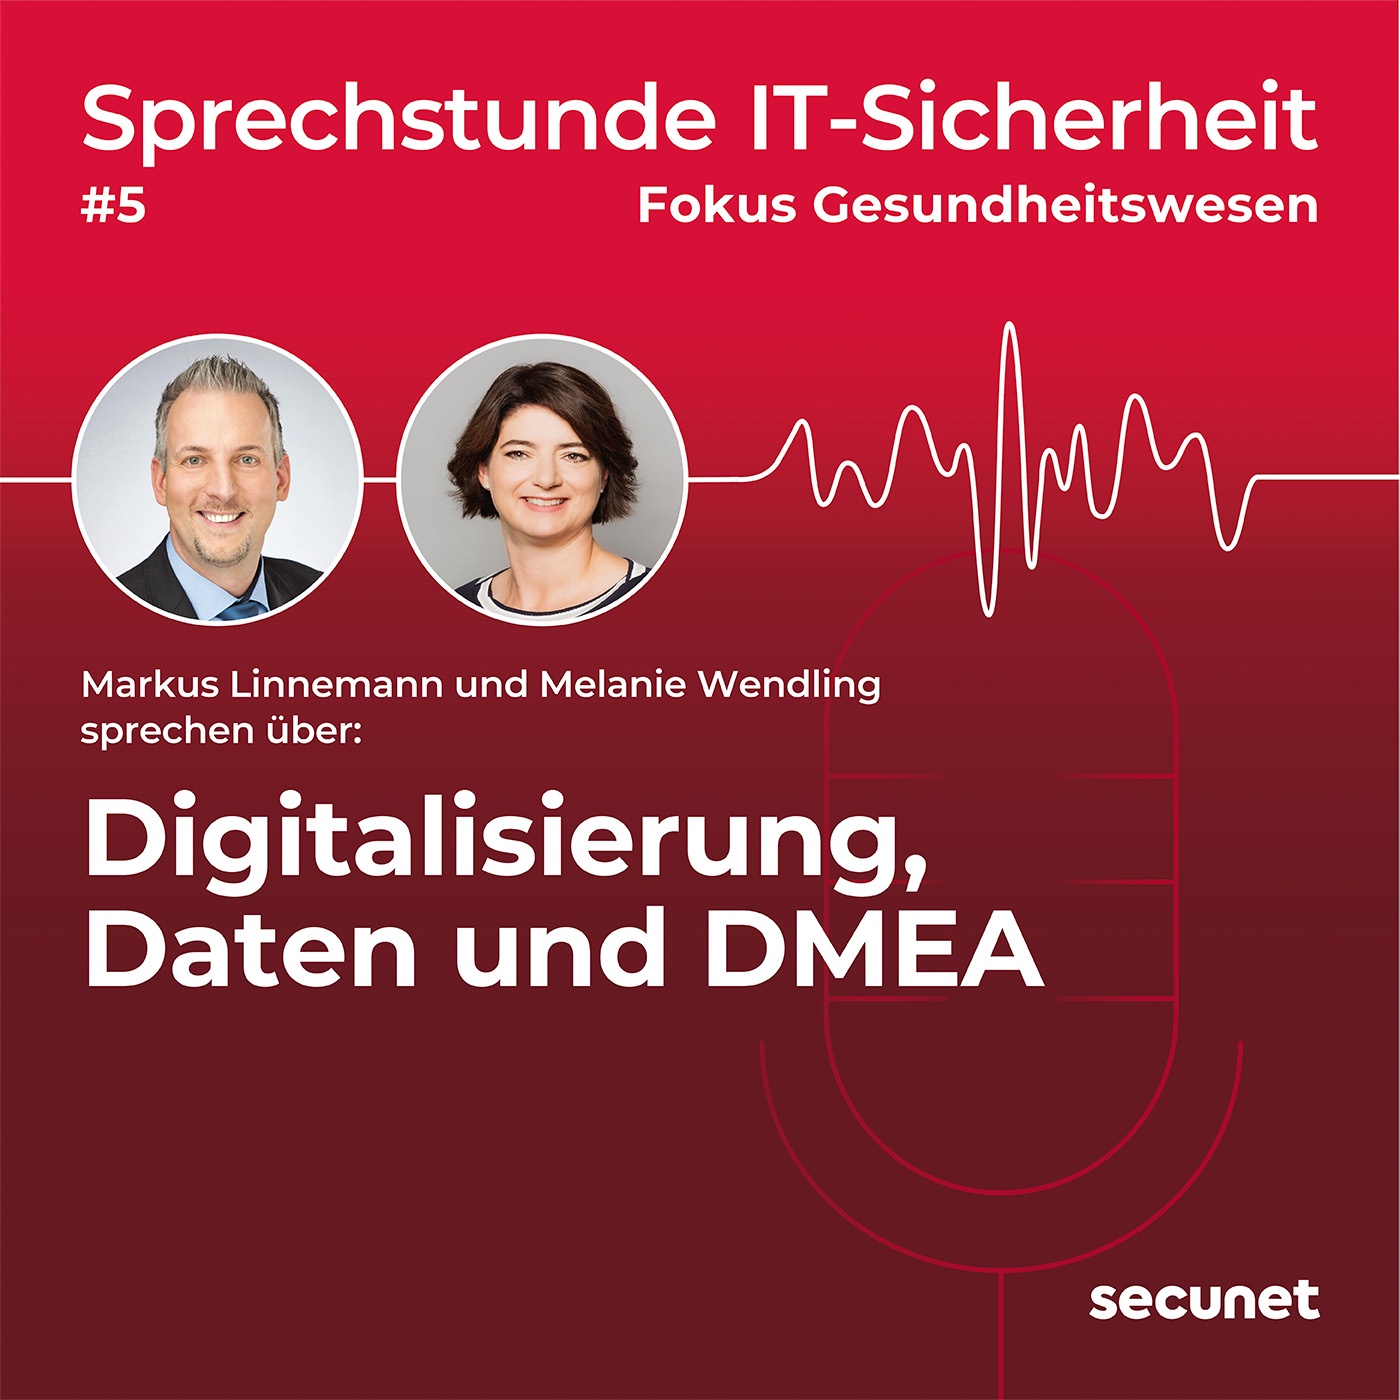 Digitalisierung, Daten und DMEA